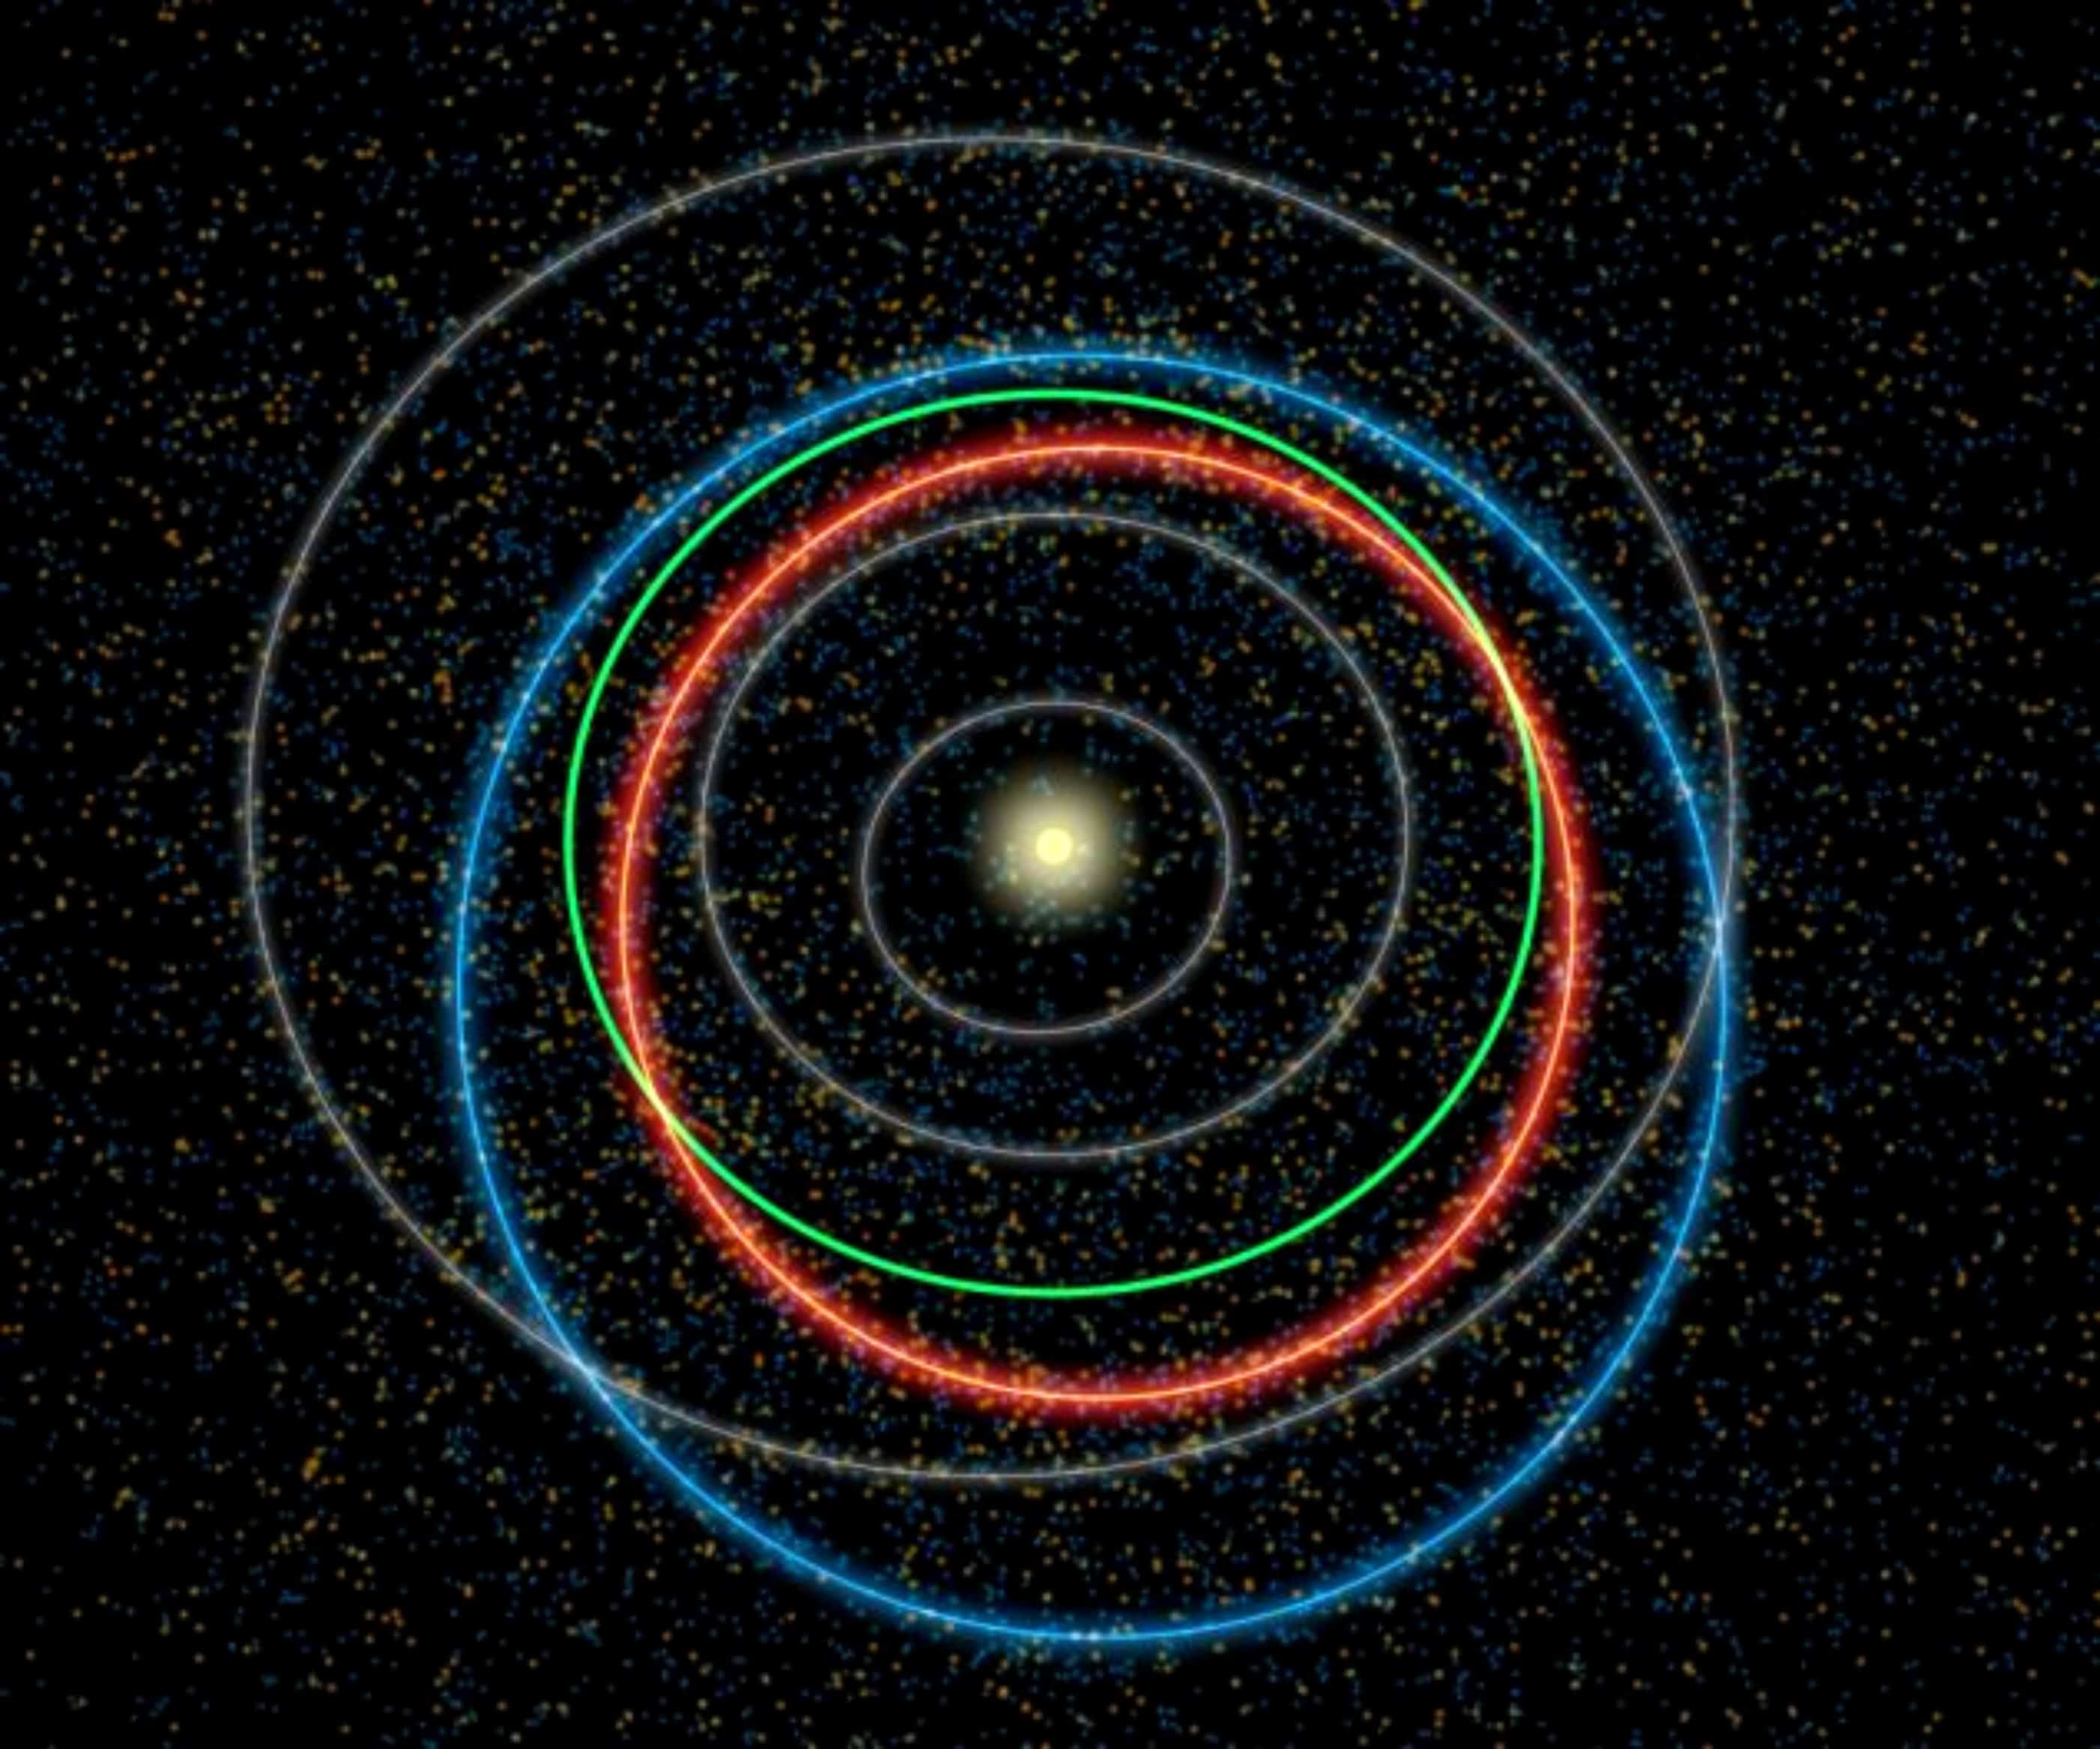 órbitas de asteroides